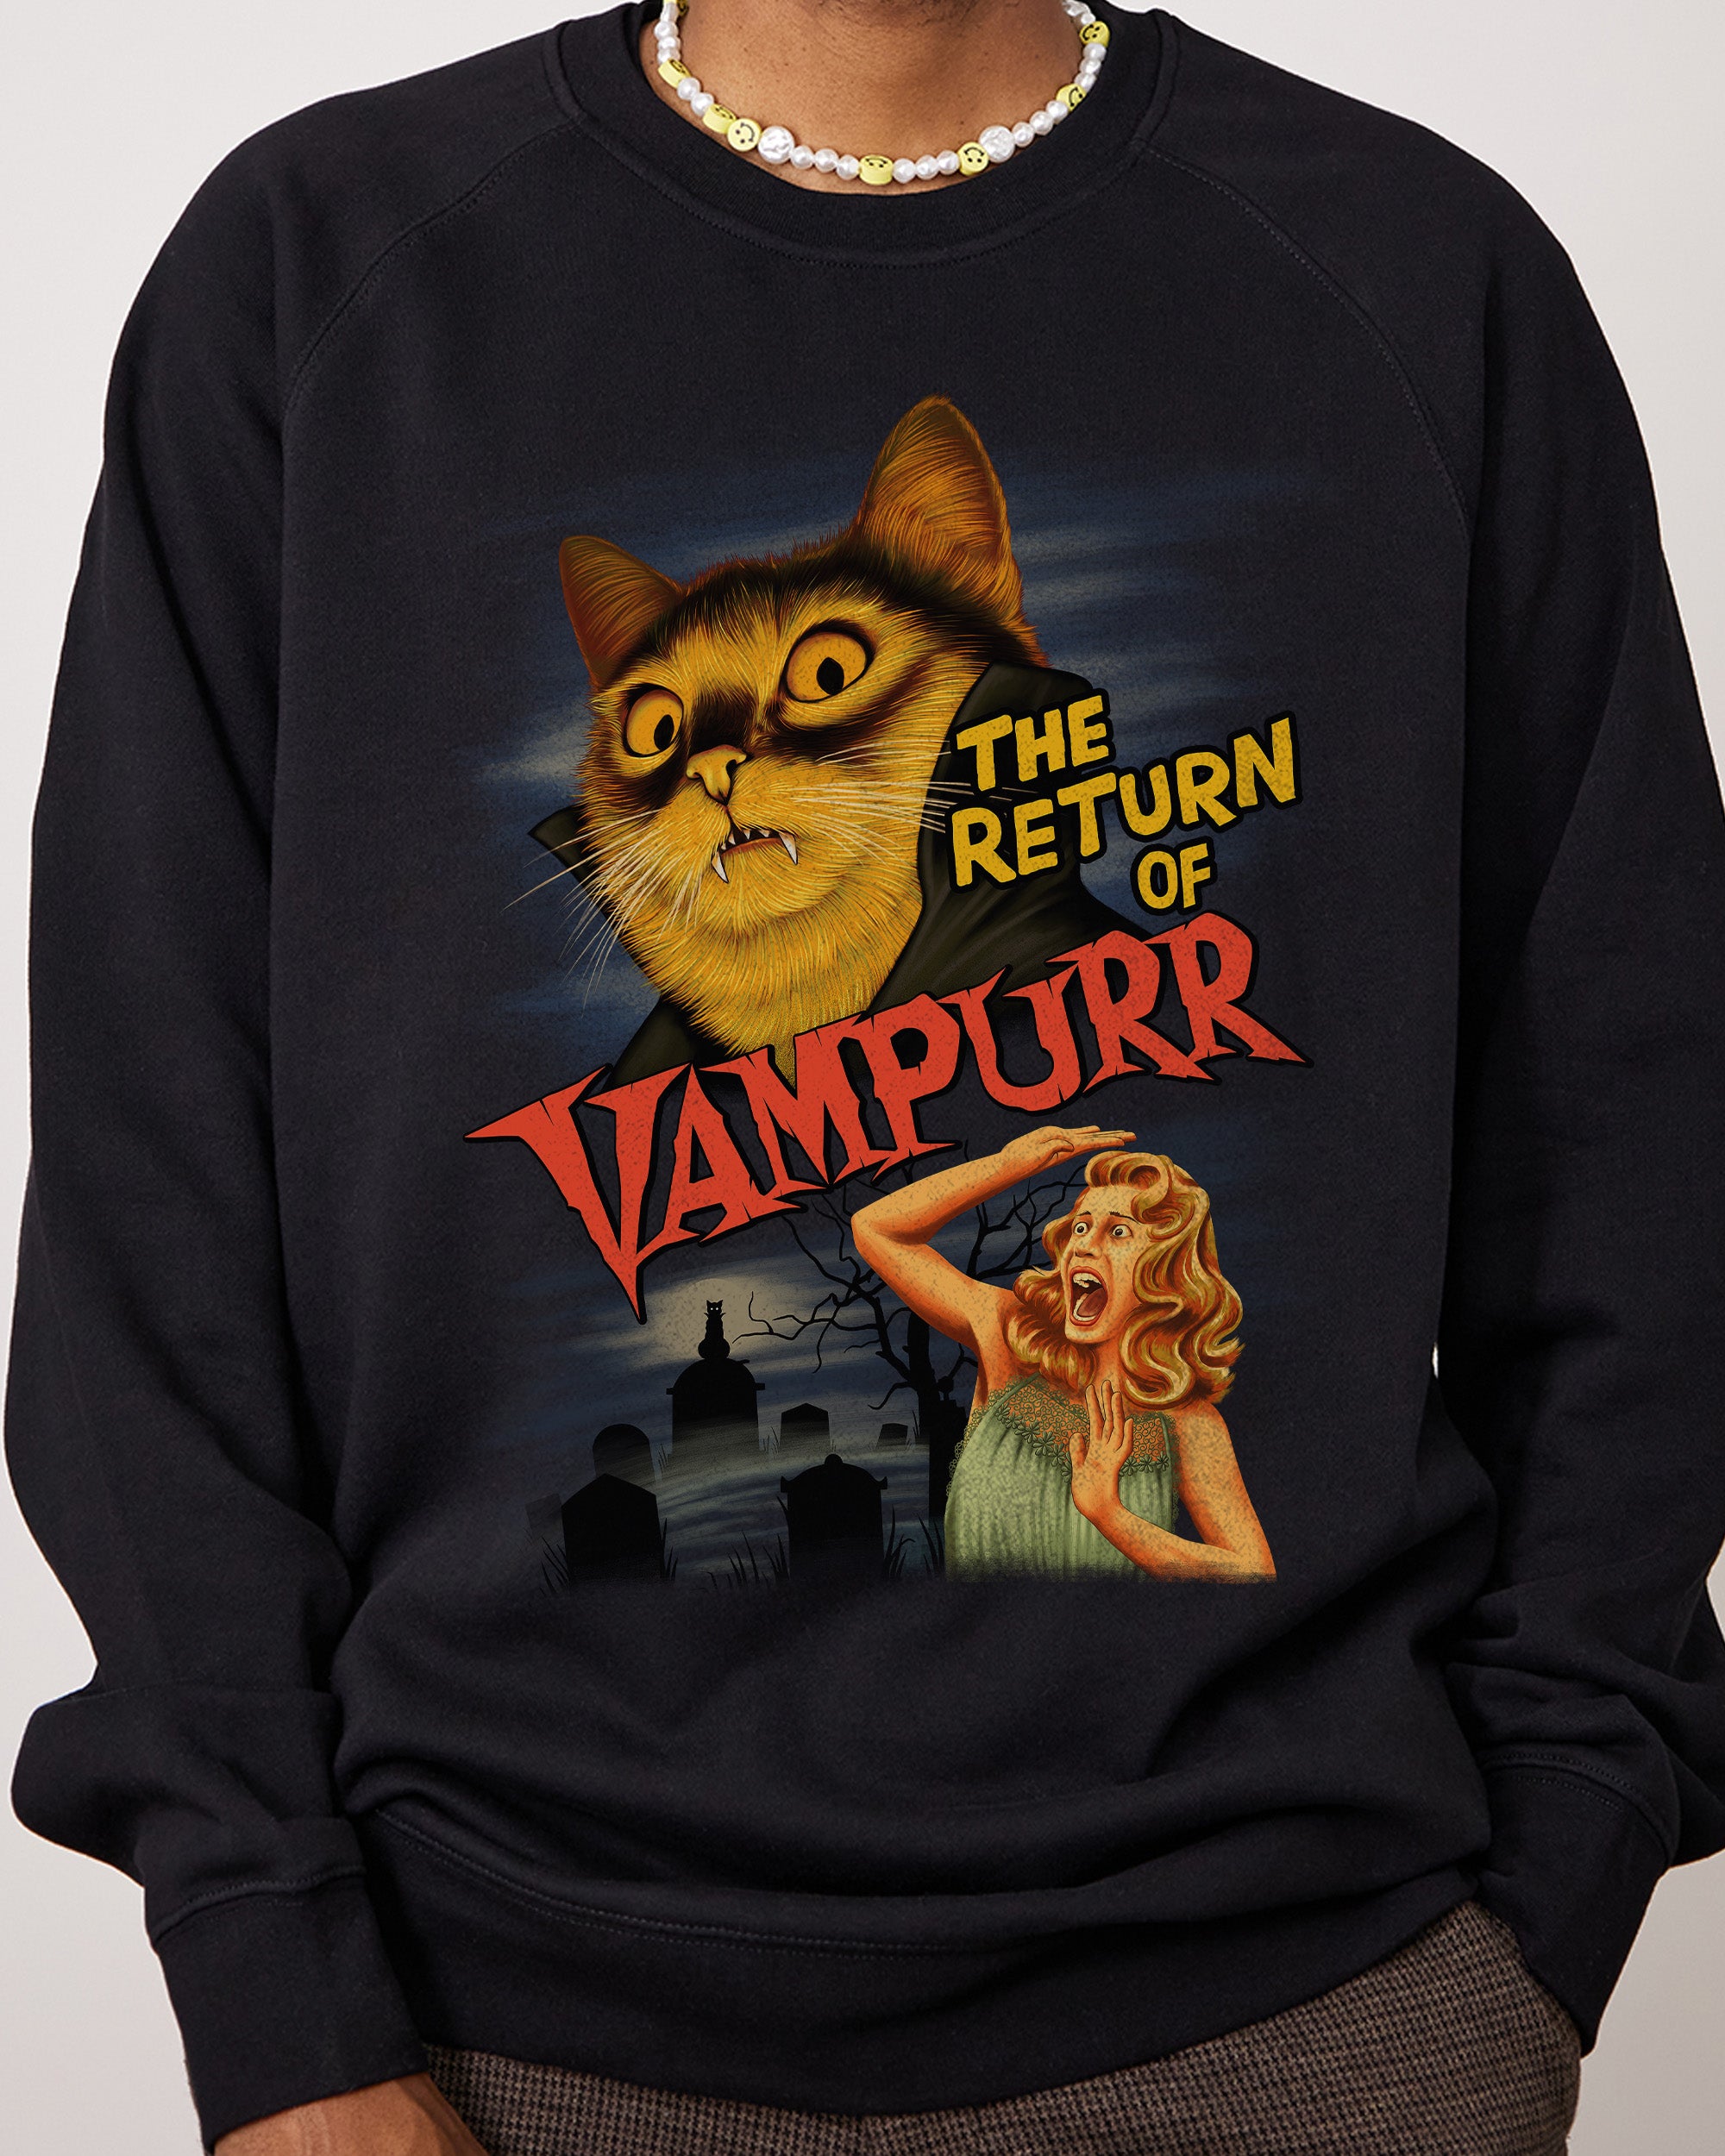 The Return of Vampurr Sweater Australia Online